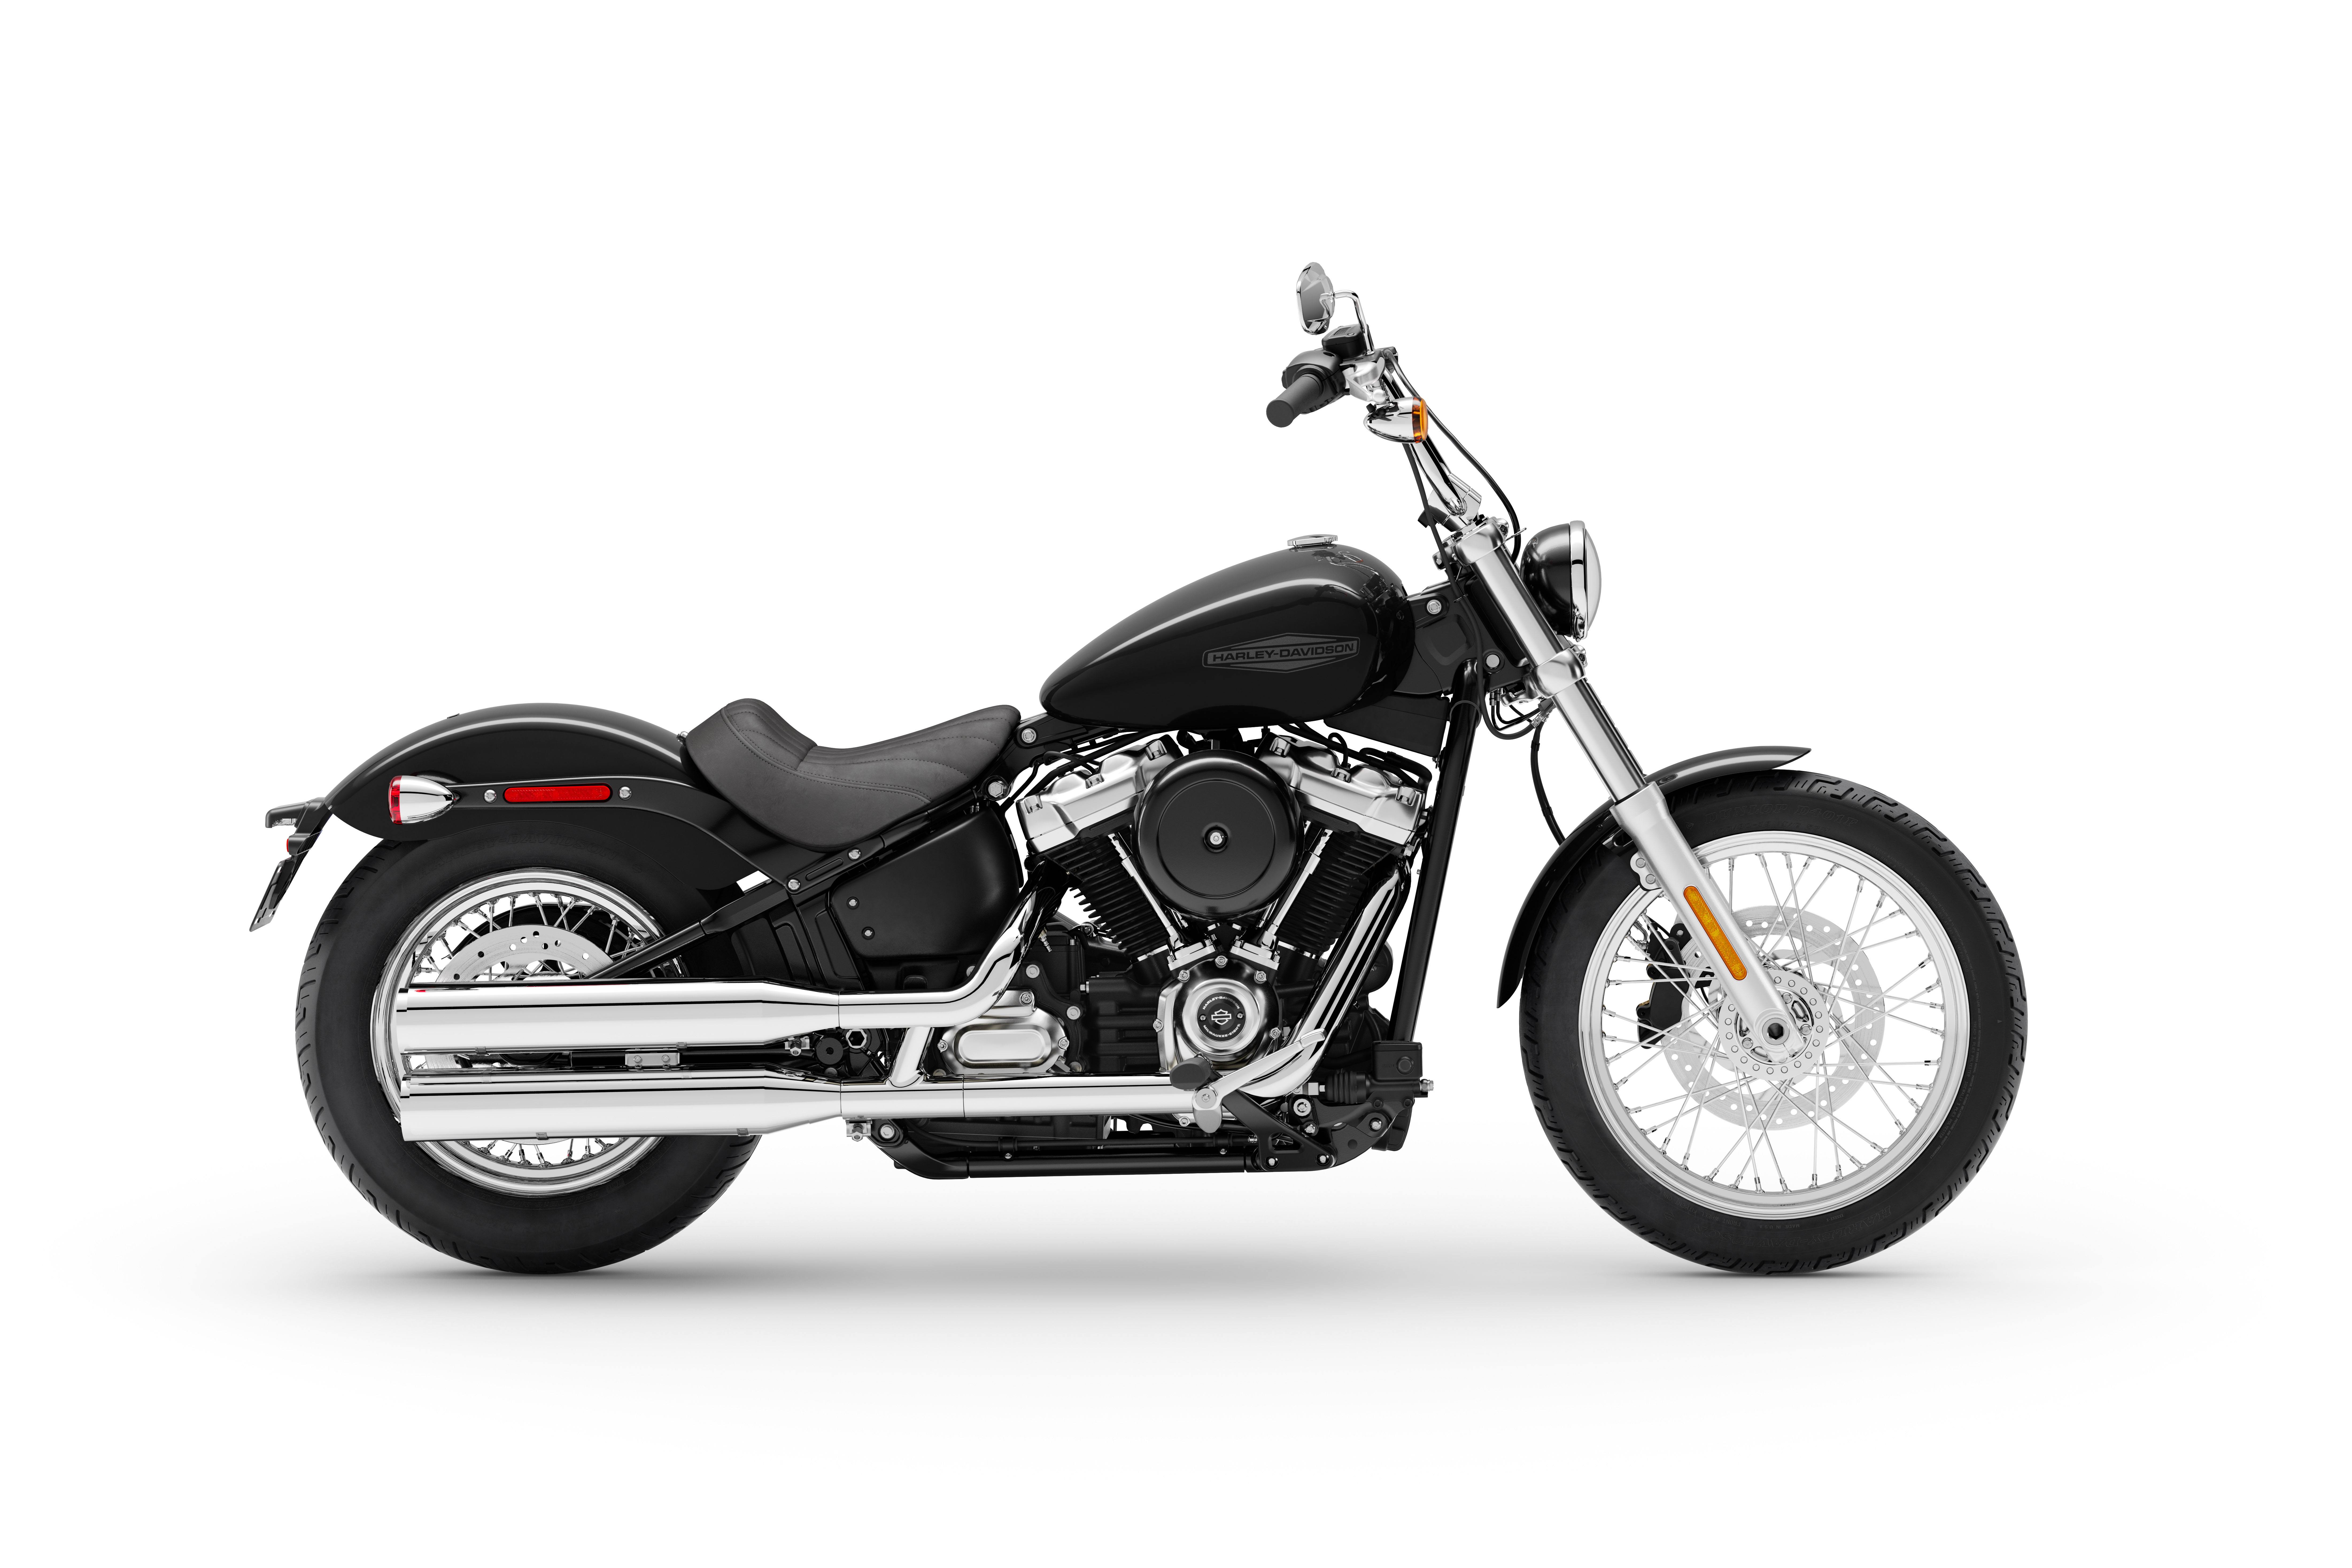 Images Of Harley Davidson Motorcycles - KibrisPDR